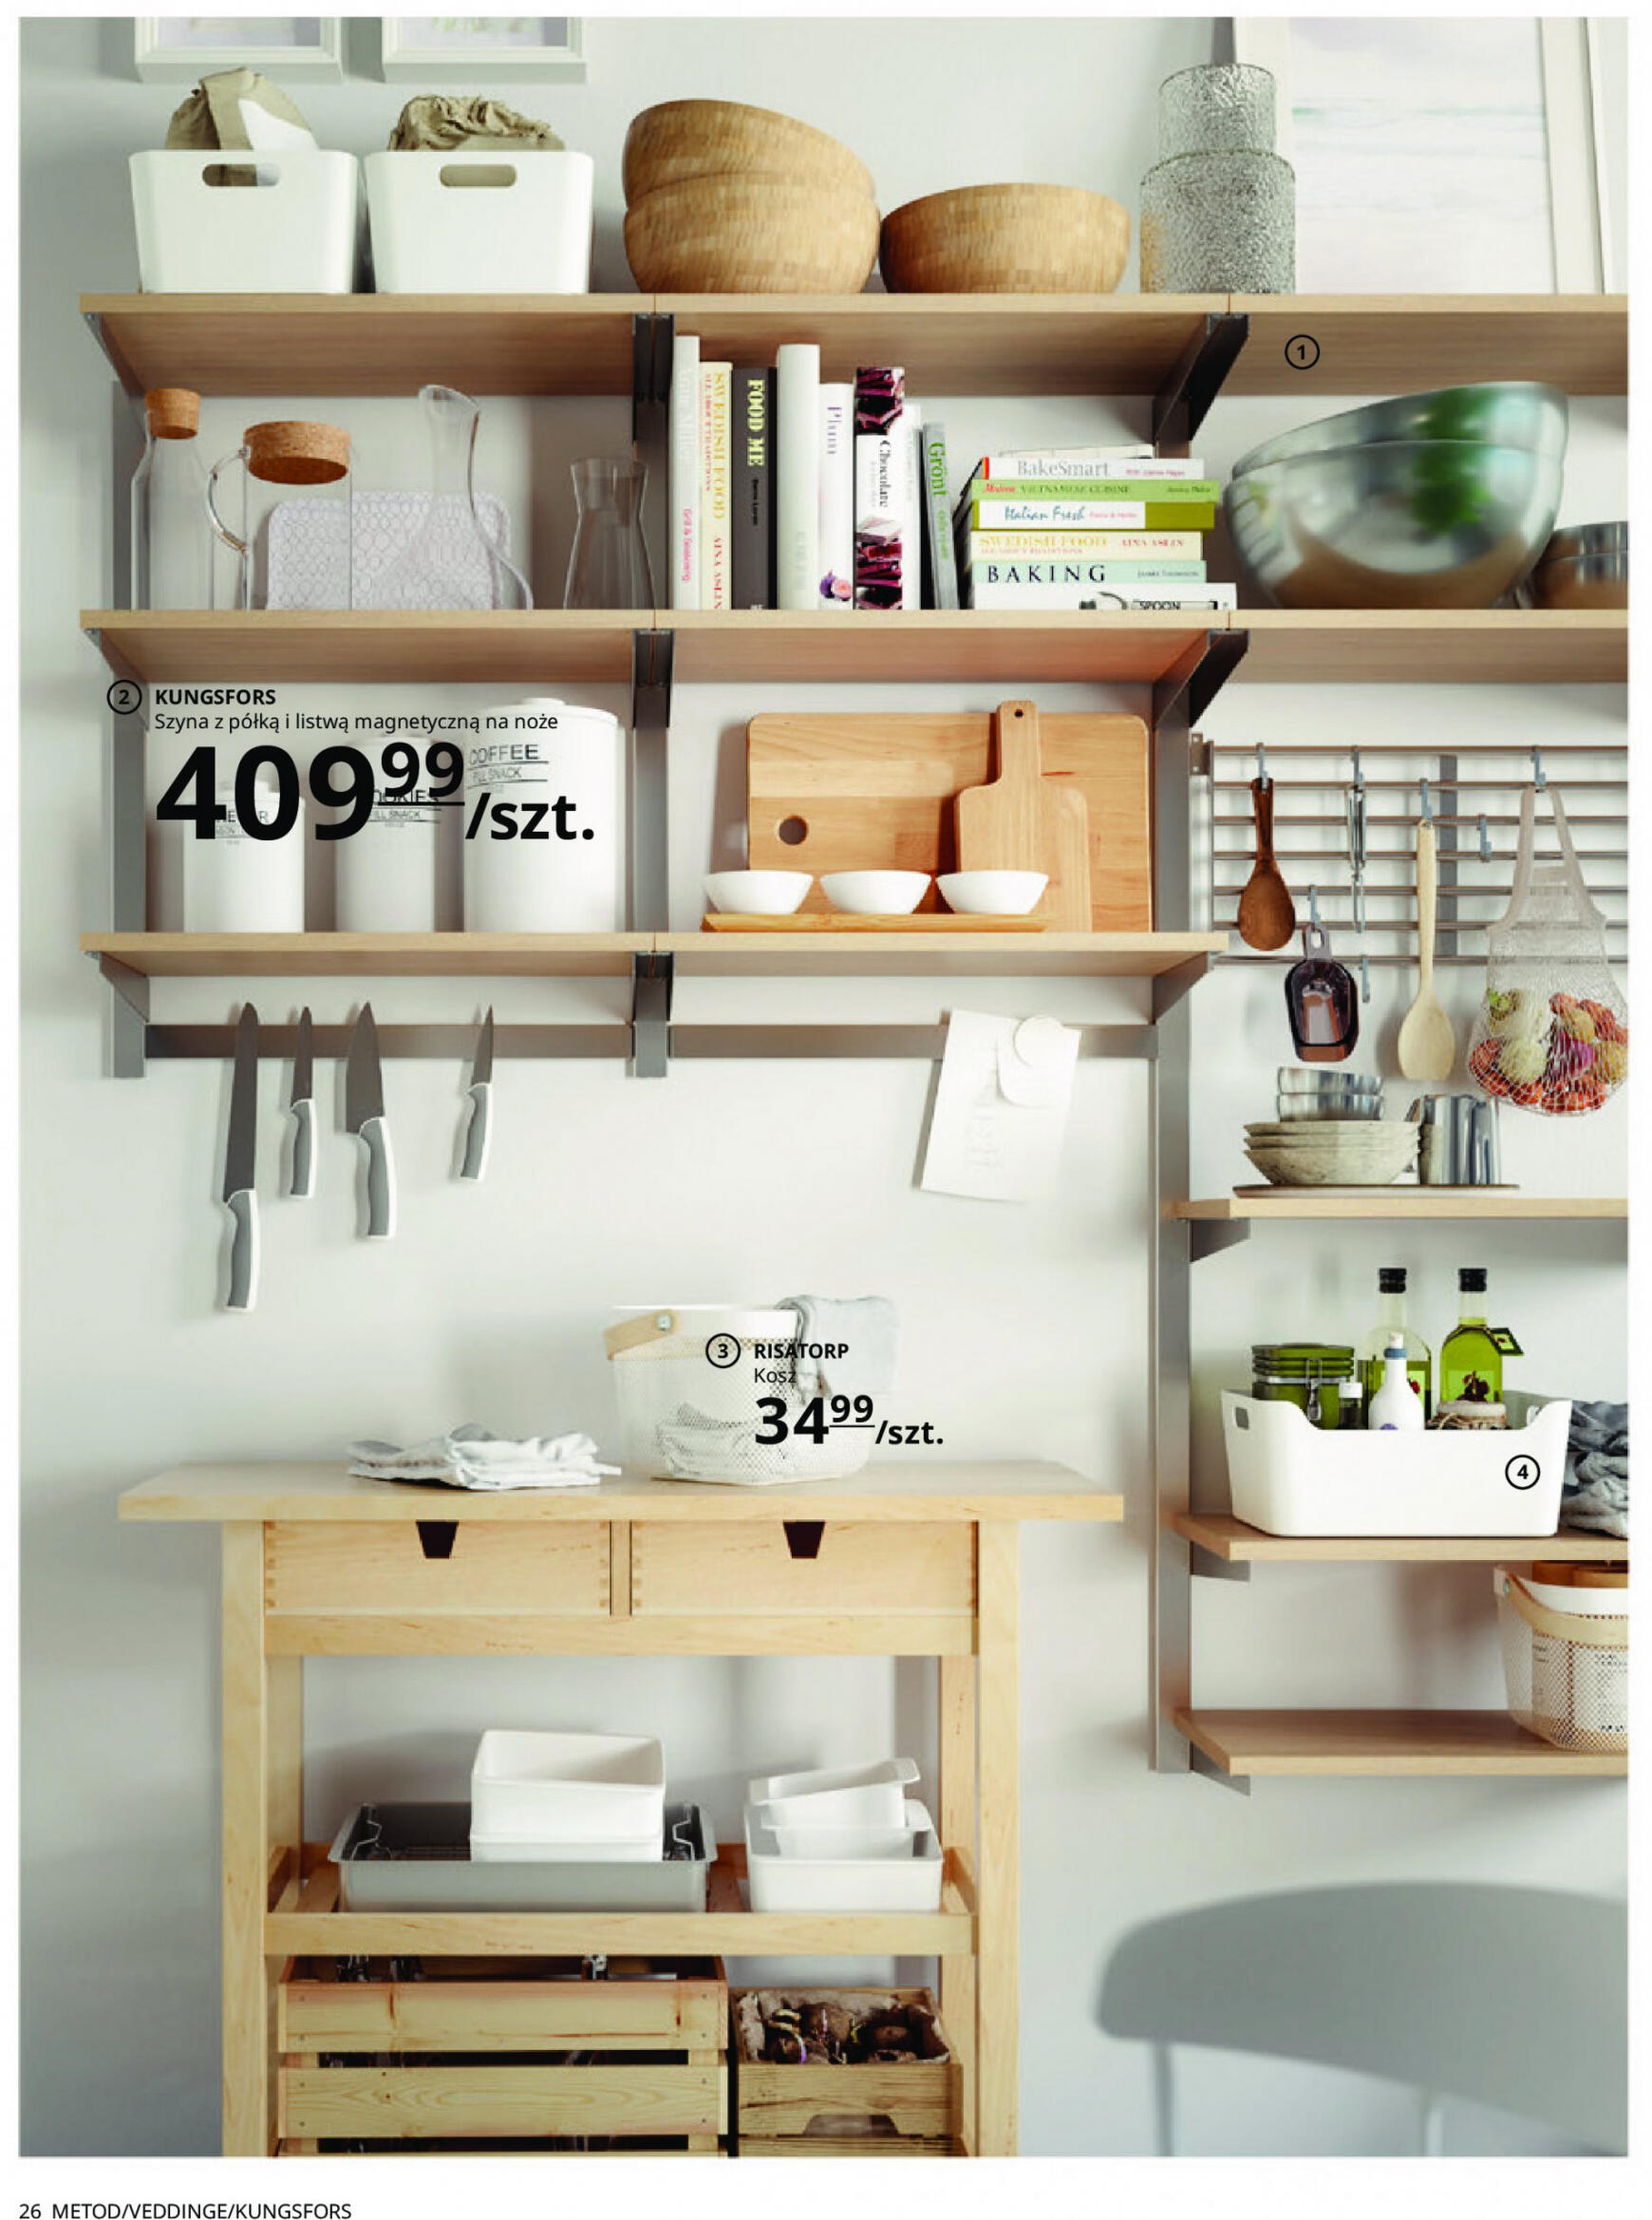 ikea - IKEA - Kuchnie - page: 26